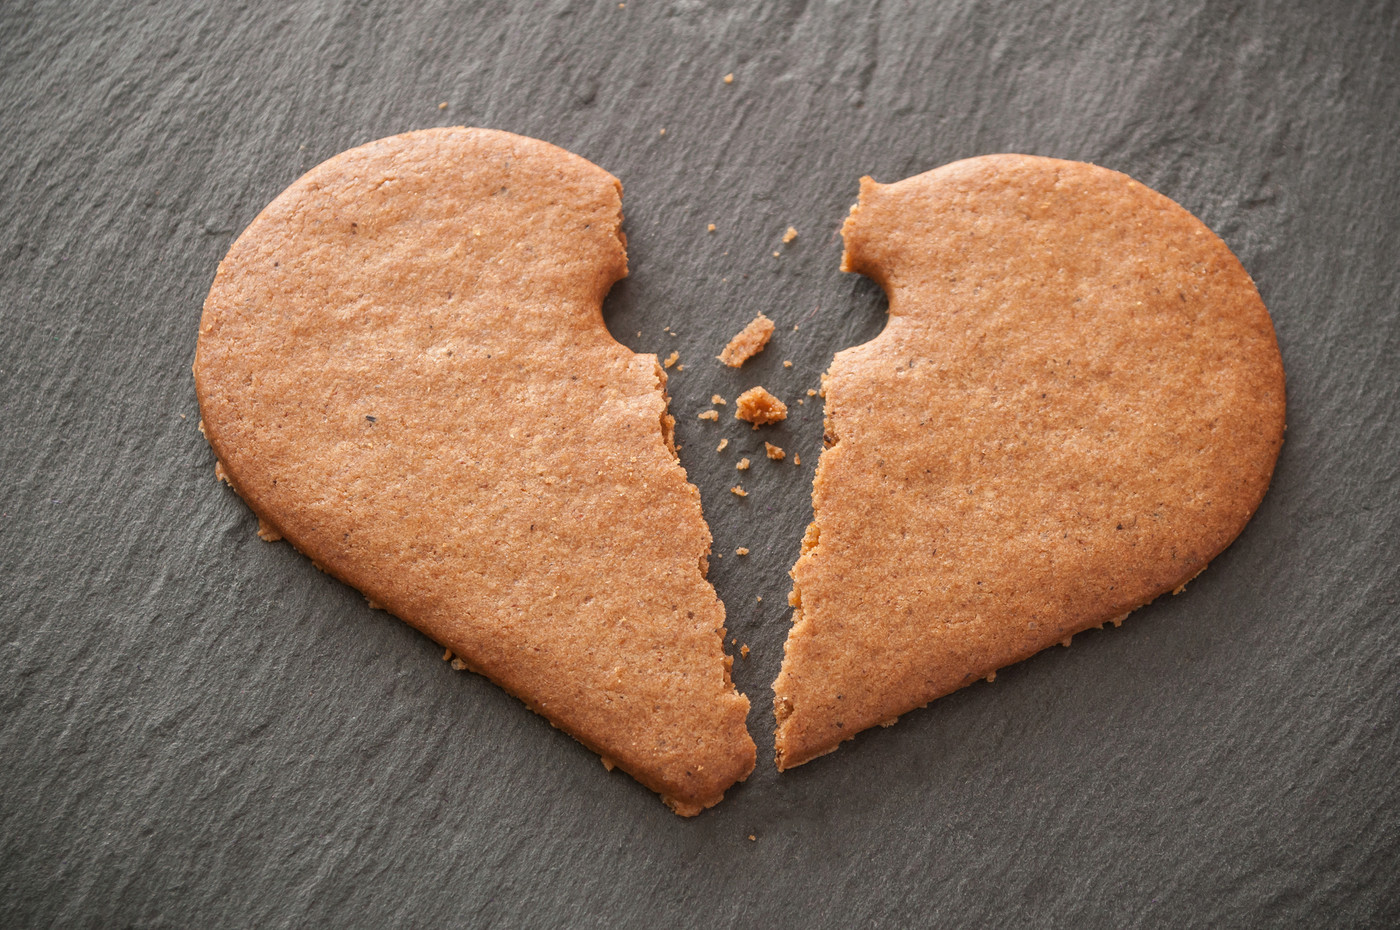 shaped broken heart biscuit on chalkboard 